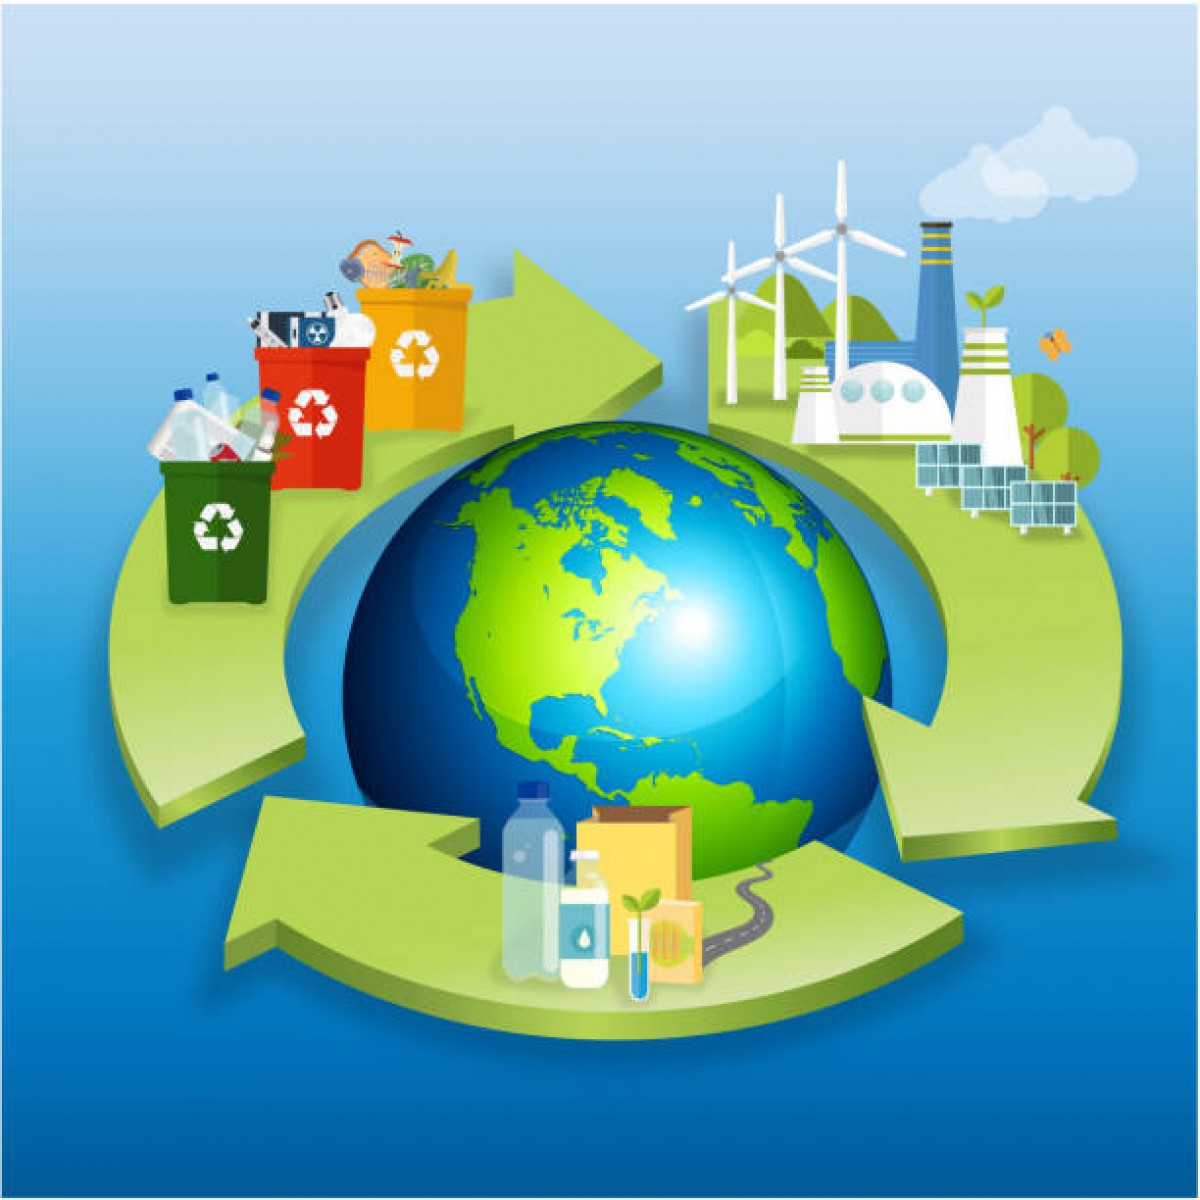 Curso online: Economía circular y sostenibilidad en la empresa